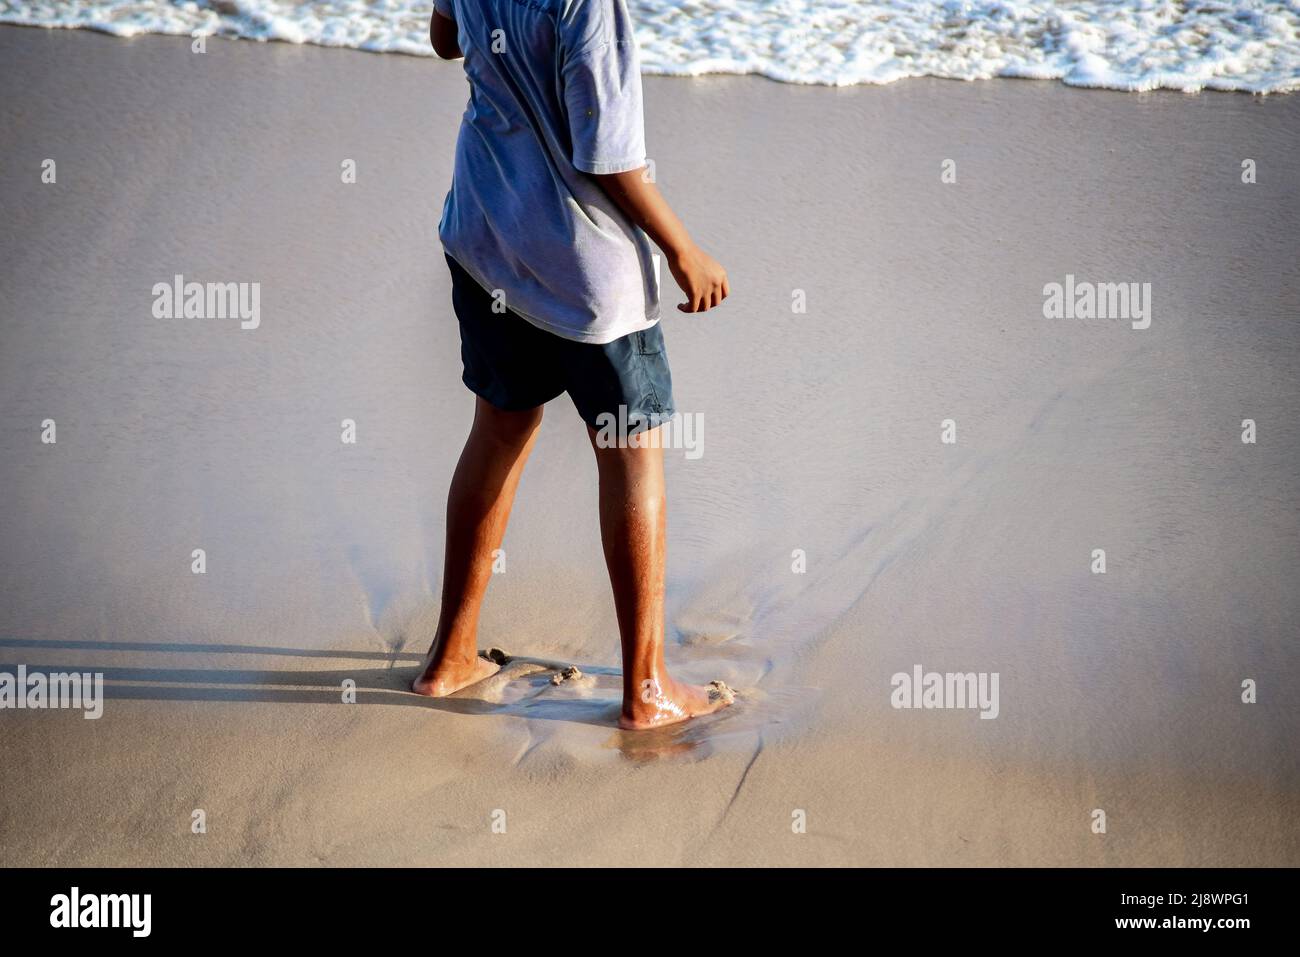 Unterer Teil einer Person, die auf dem Strandsand steht. Salvador Stadt, Bahia Staat, Brasilien. Stockfoto